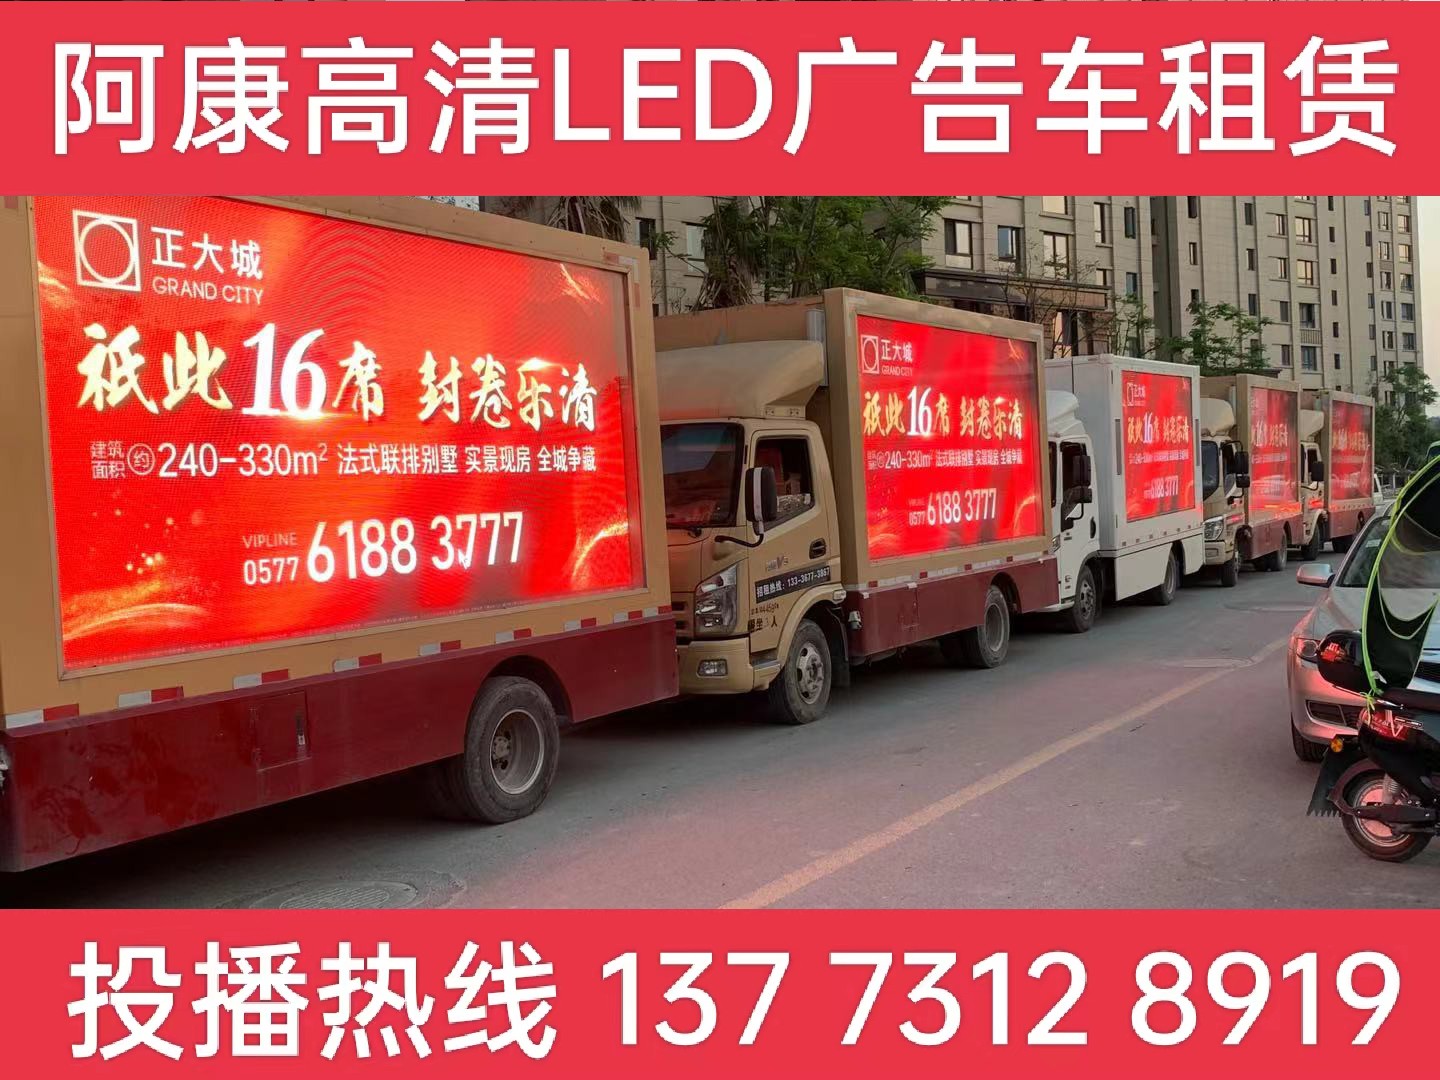 仪征LED广告车出租